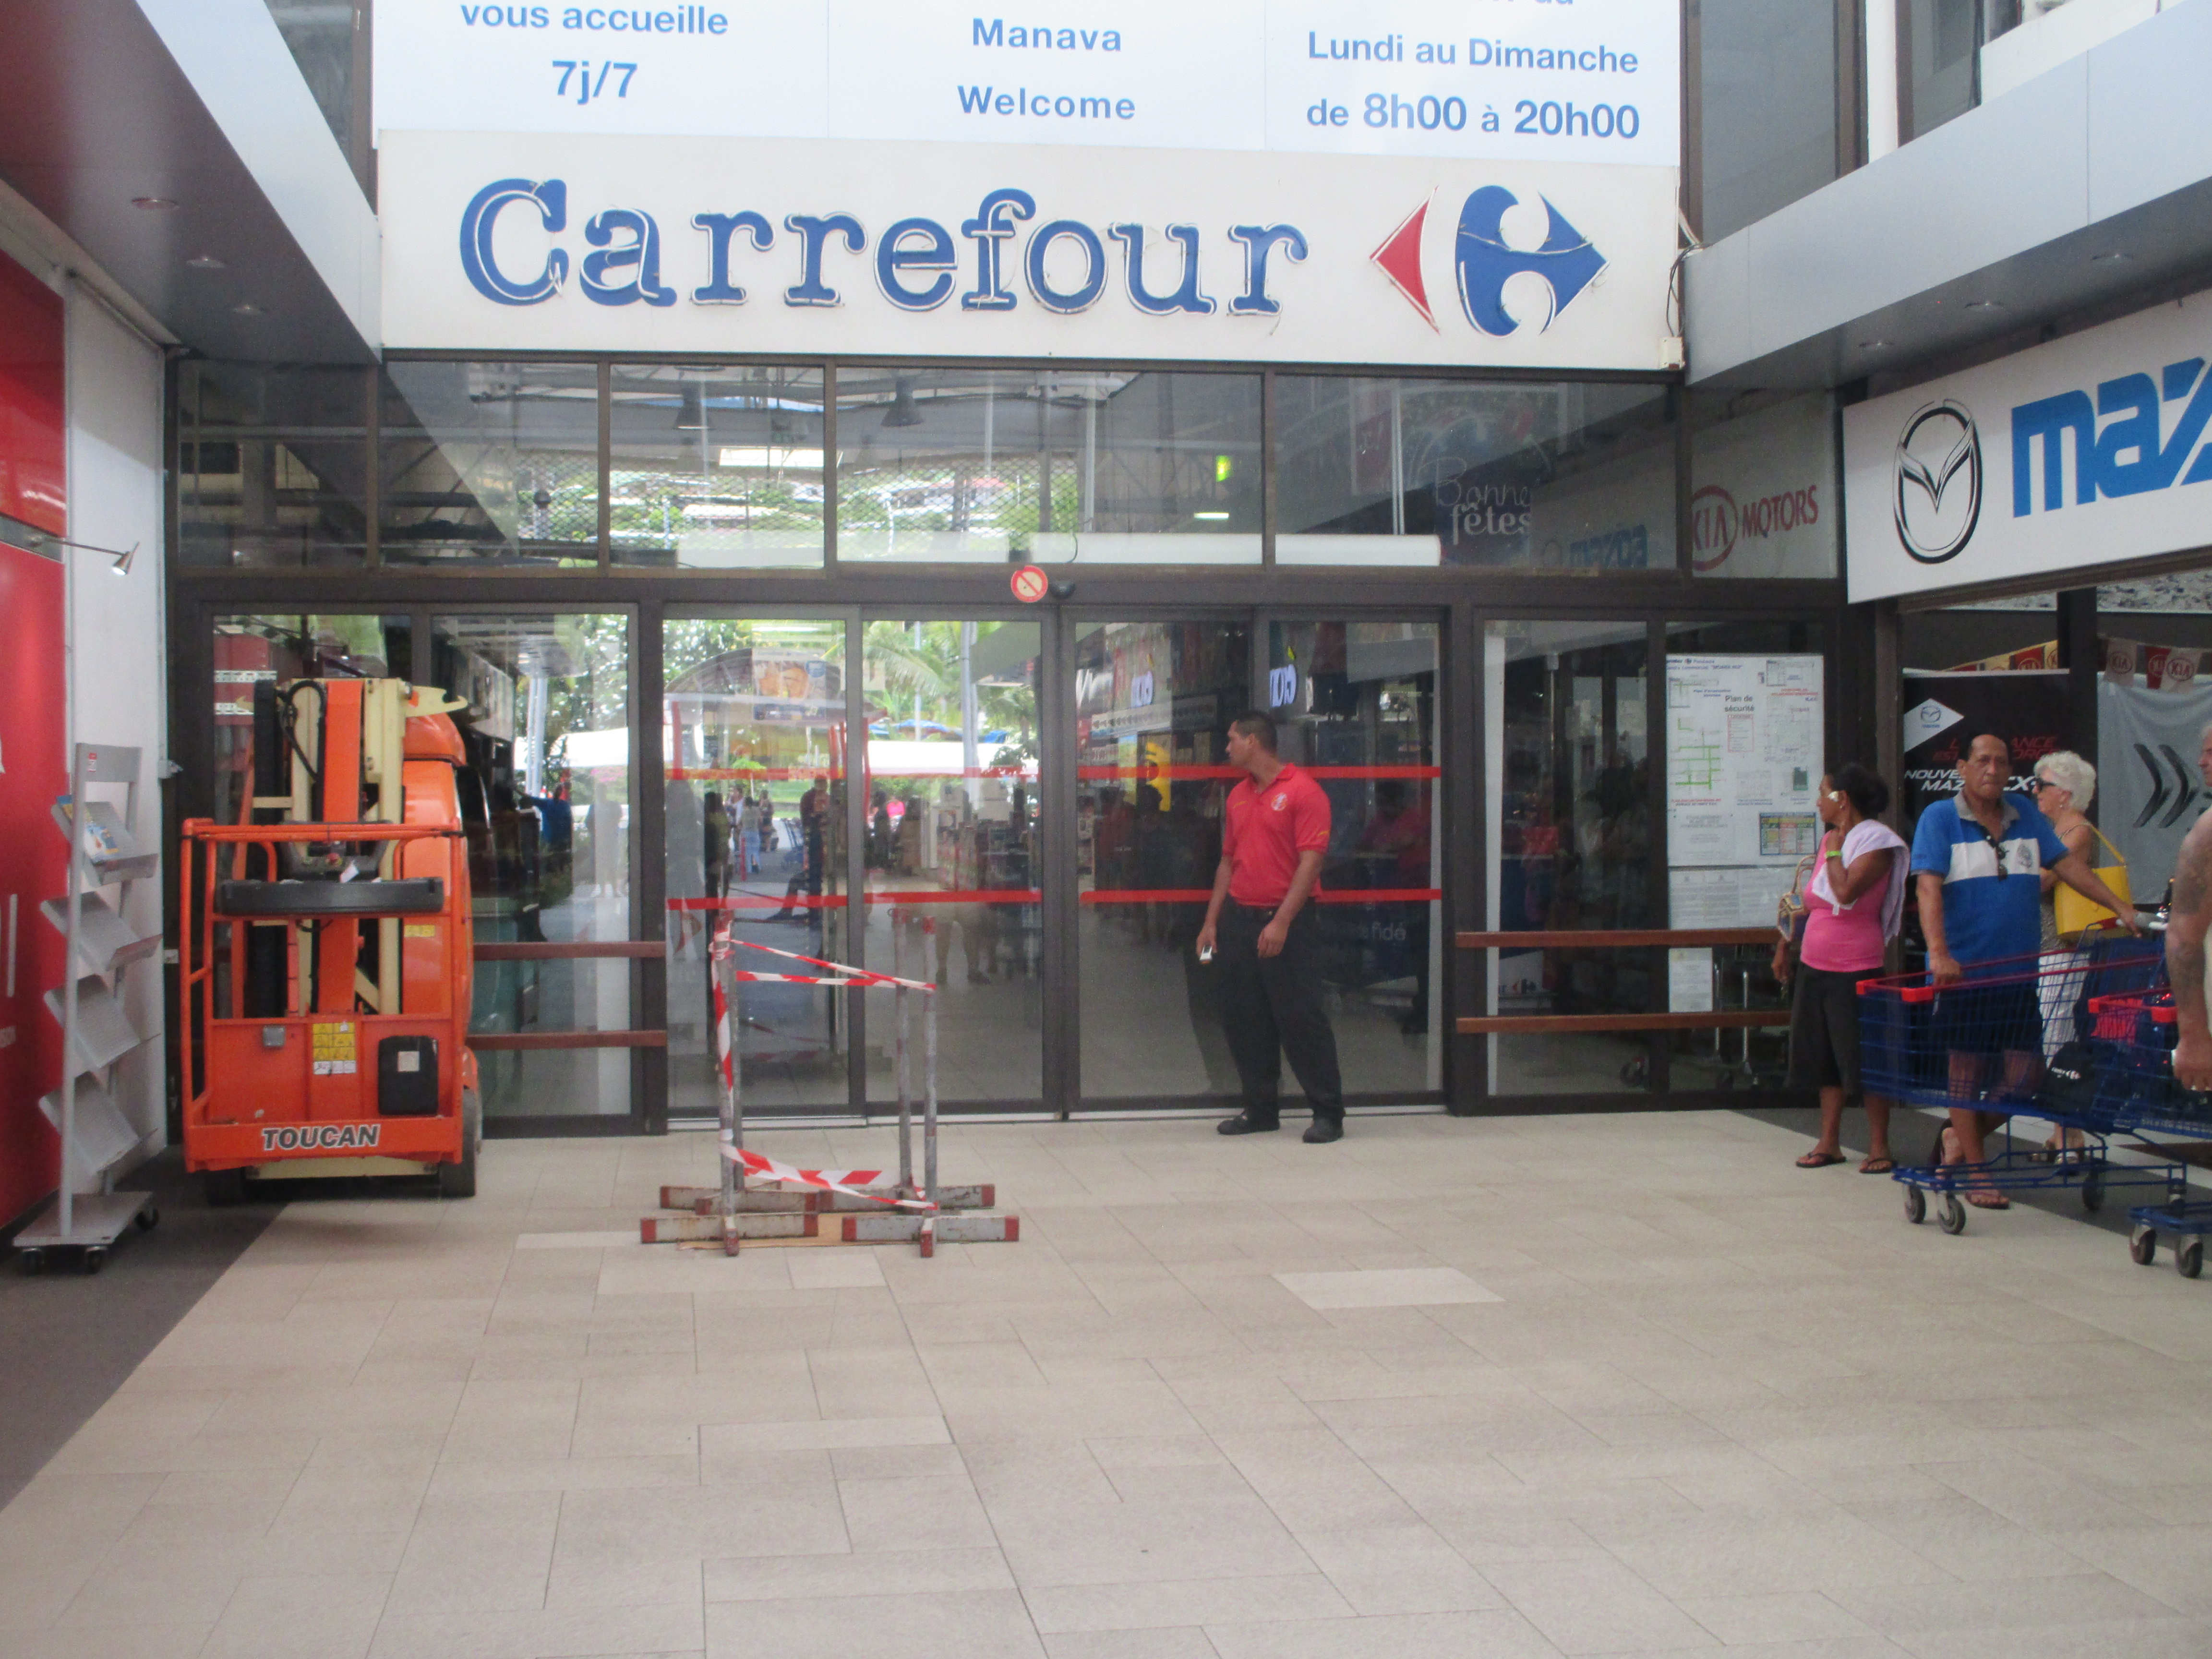 Punaauia : coupure de courant à Carrefour, les clients évacués